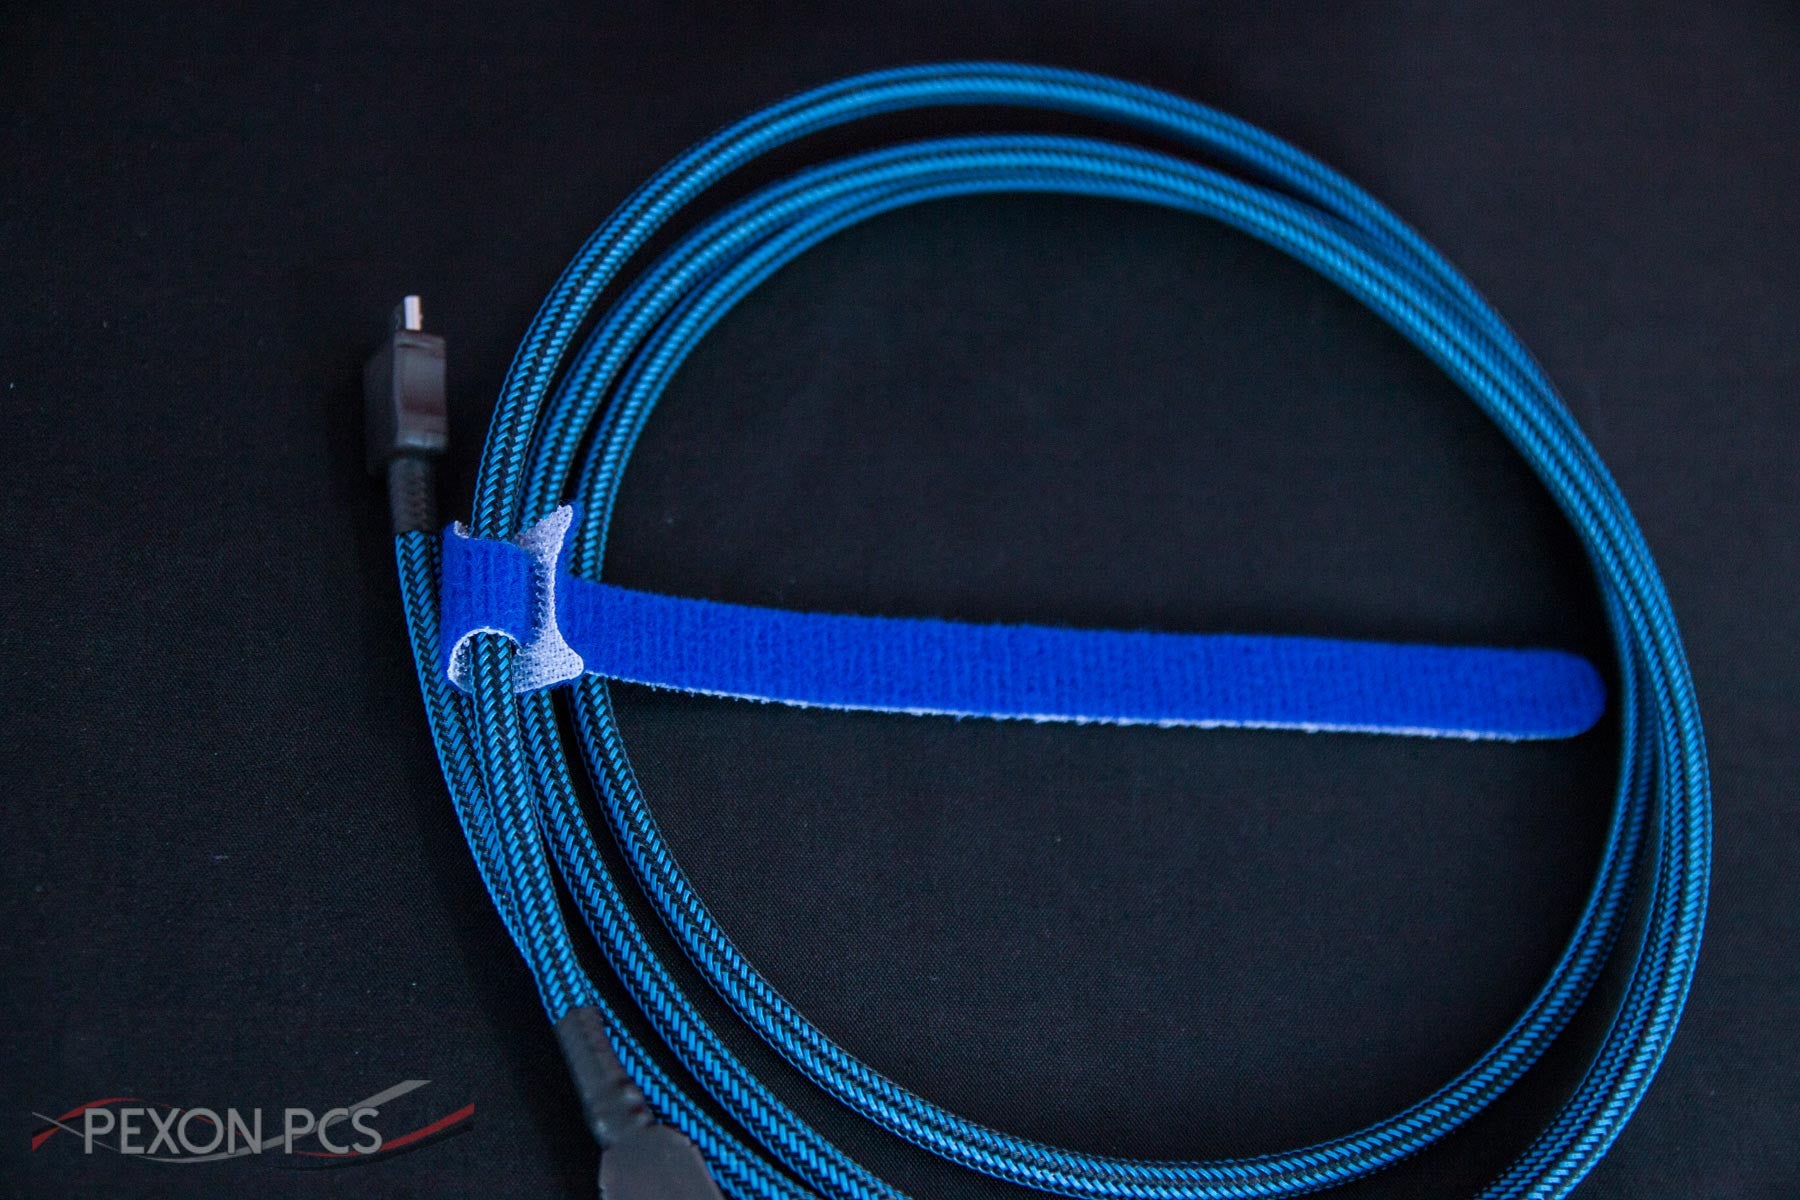 Velcro Cable Wraps - Pexon PCs 